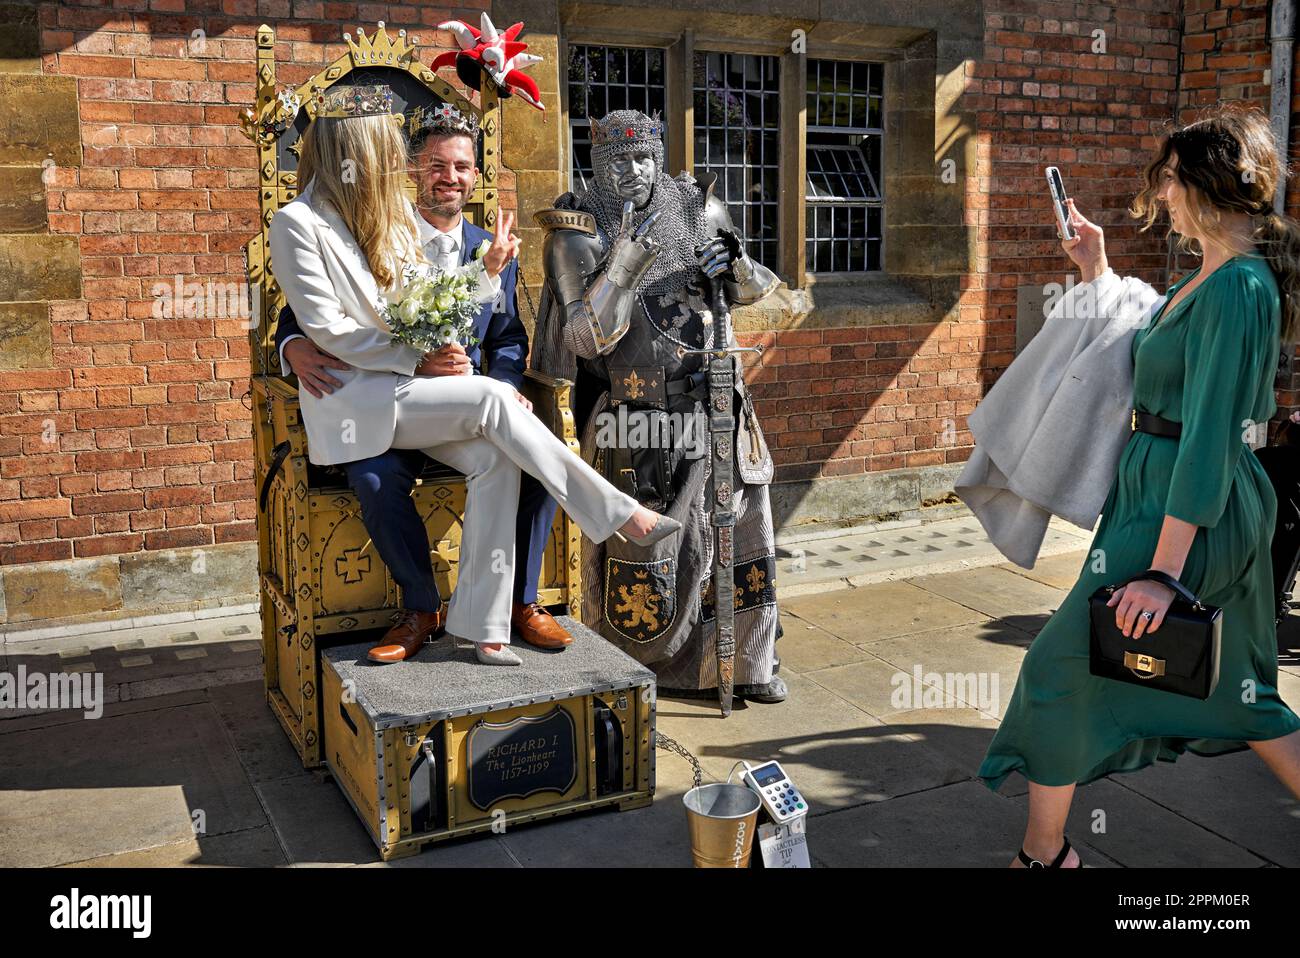 Living Statue of Richard 1, Richard the Lion Heart, et couple nouvellement marié posant pour une photo, Henley Street, Stratford upon Avon, Angleterre Banque D'Images